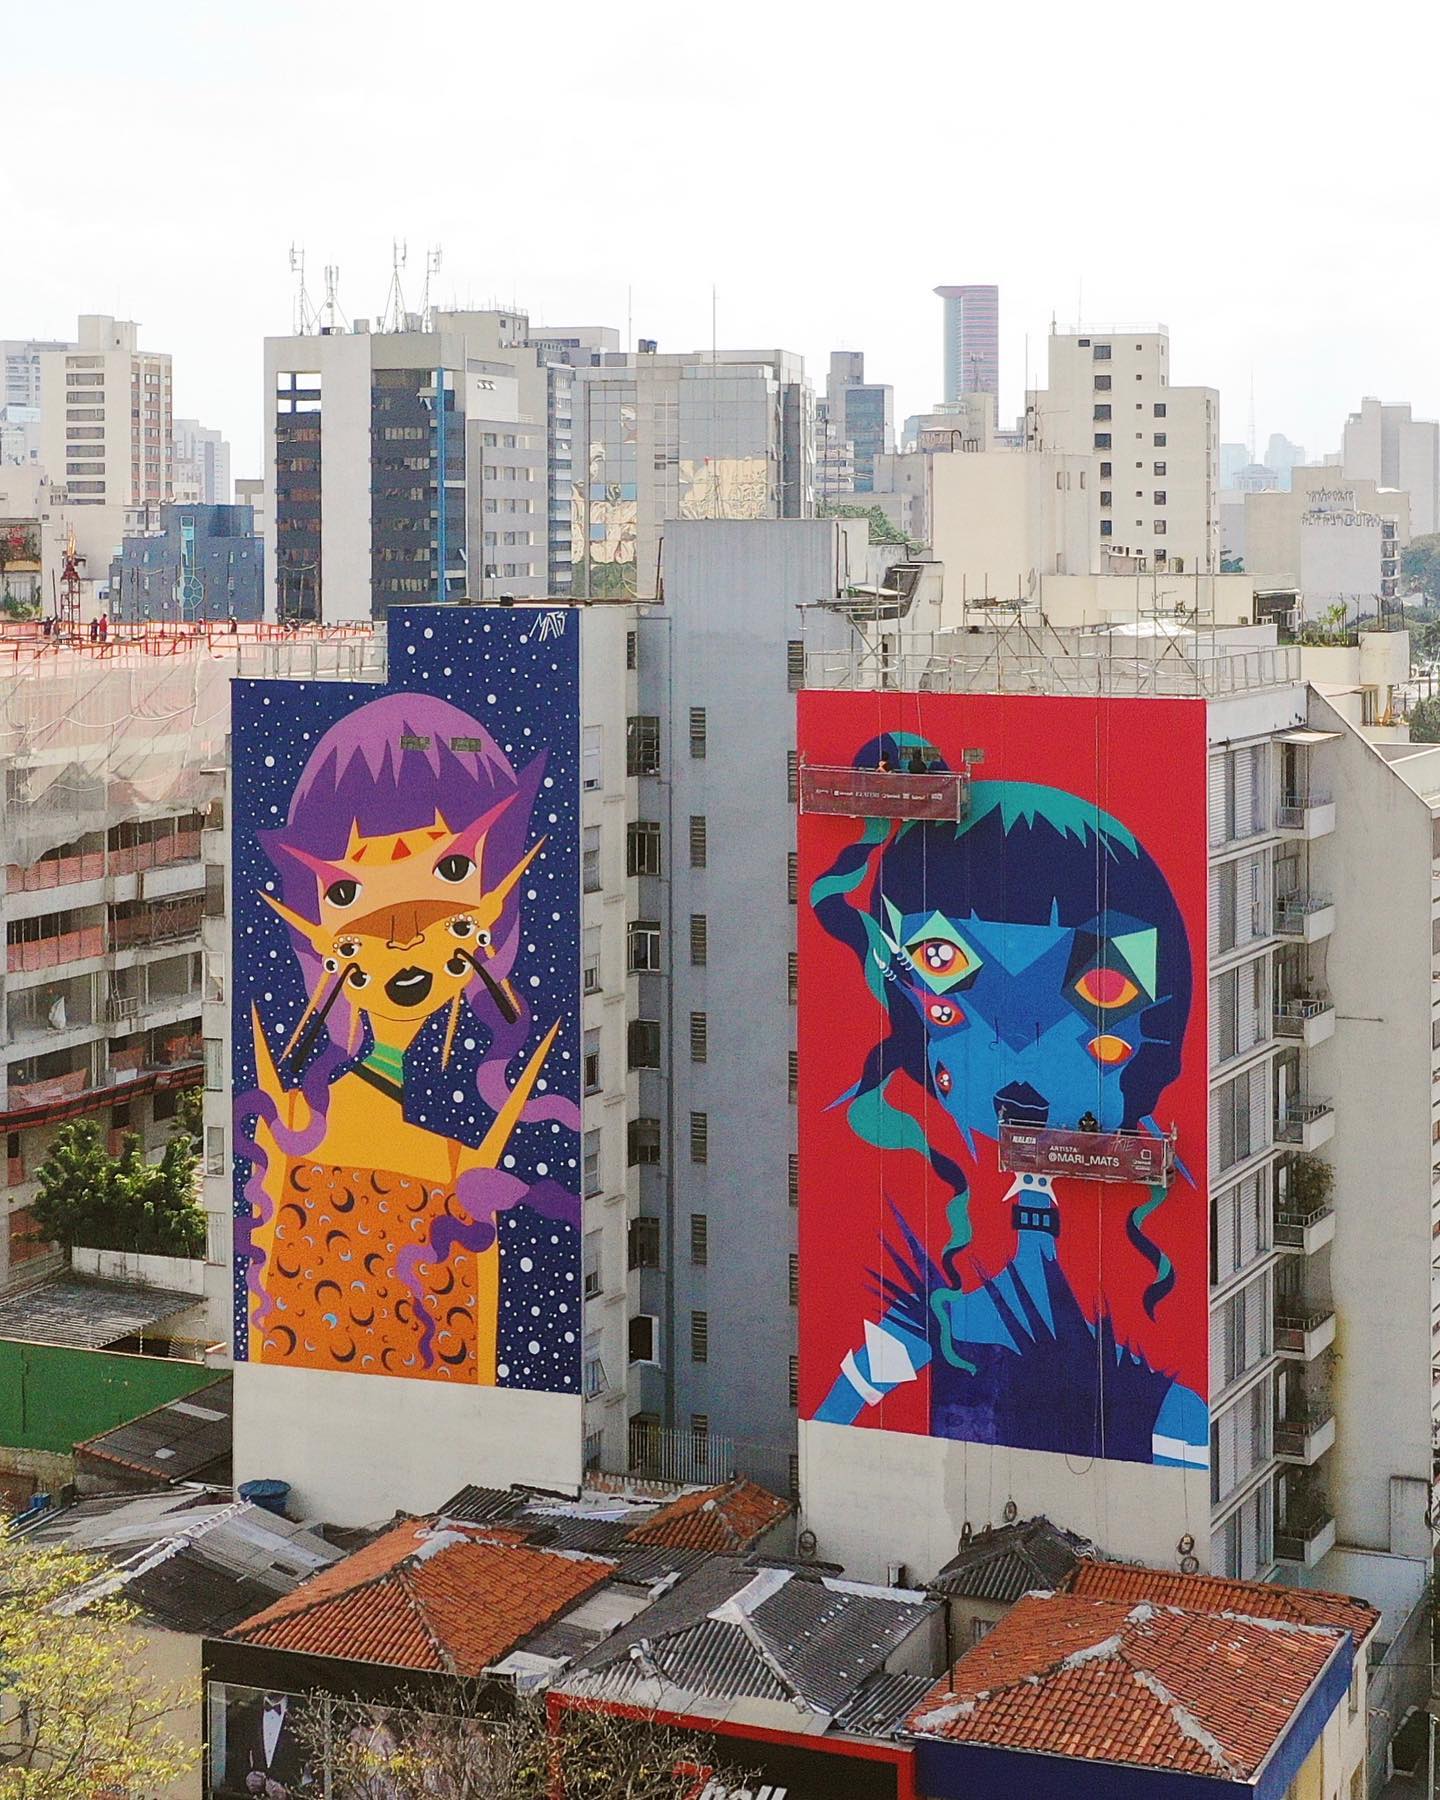 Novo grafite no Largo da Batata, da artista Mariana Mats, relizado no Festival NaLata (Foto: divulgação / Festival NaLata)